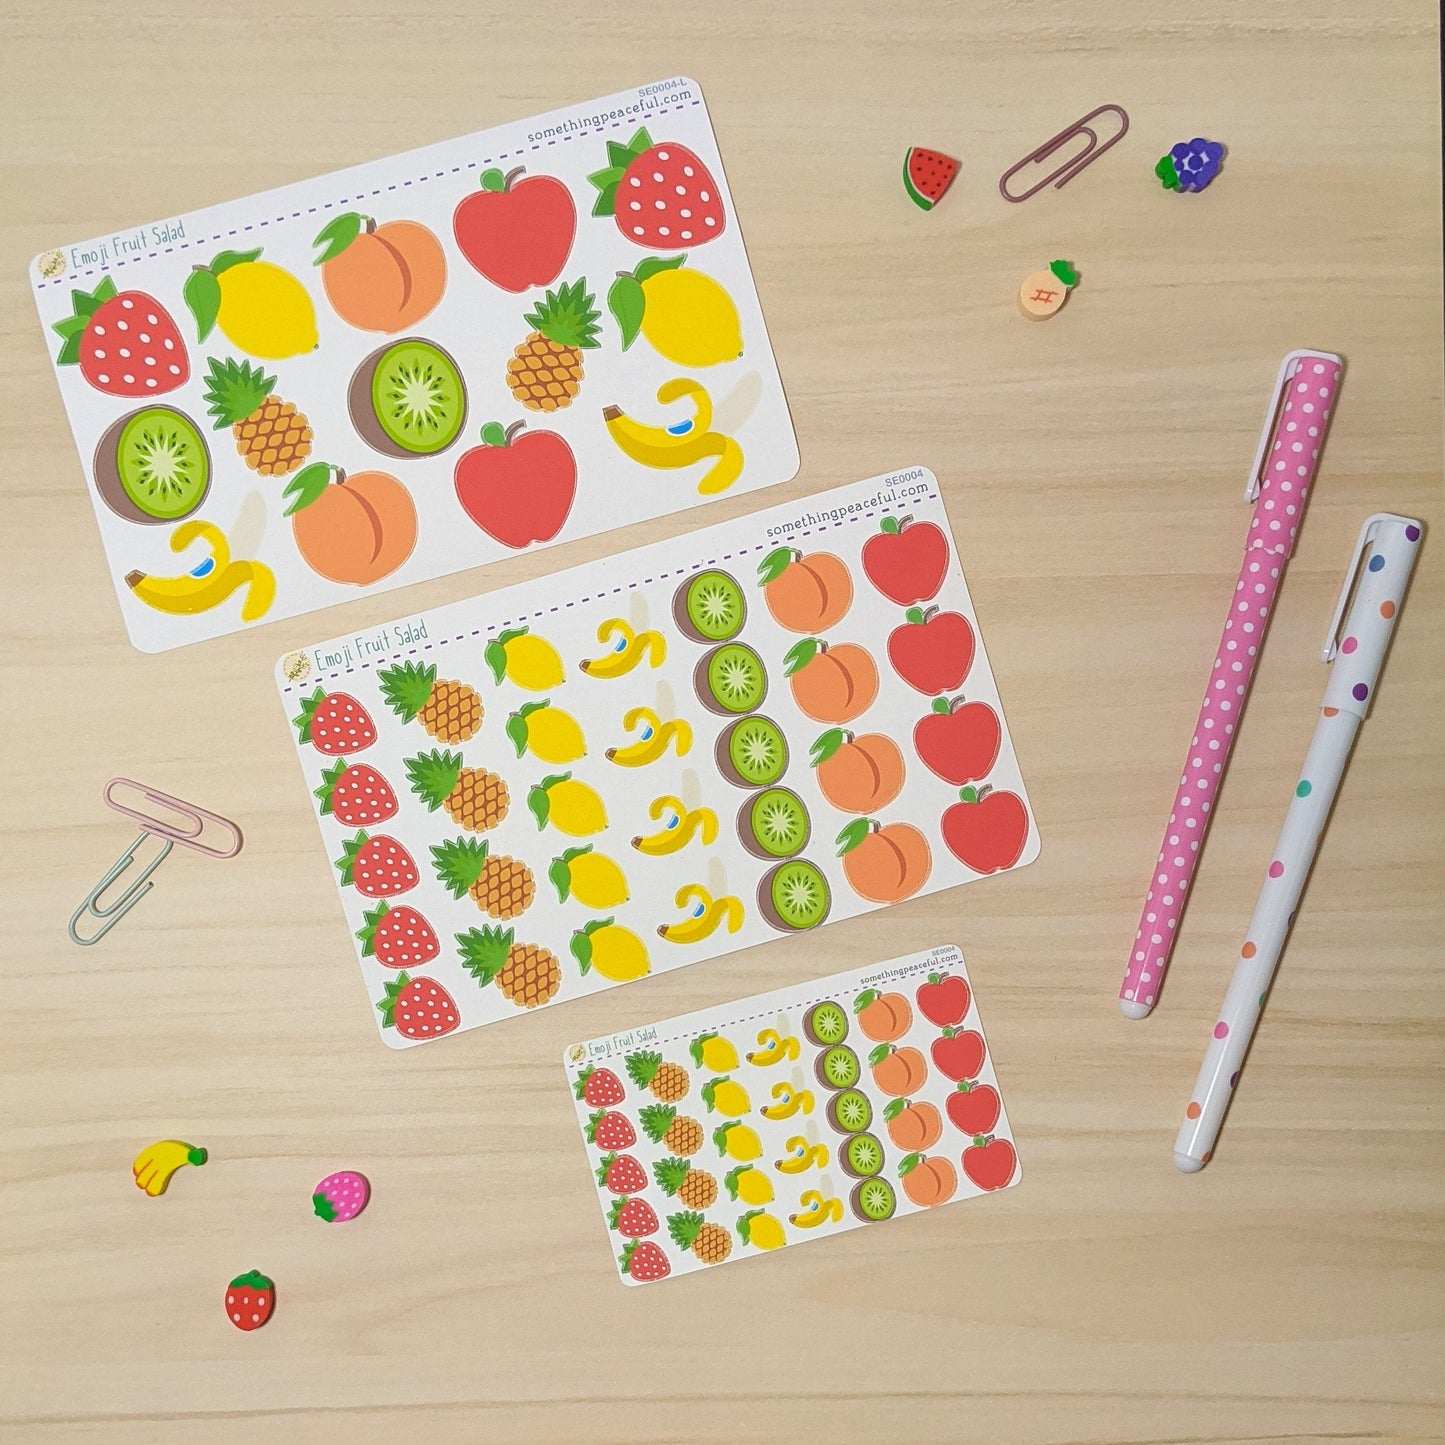 Fruit Salad Emoji Stickers Sheet